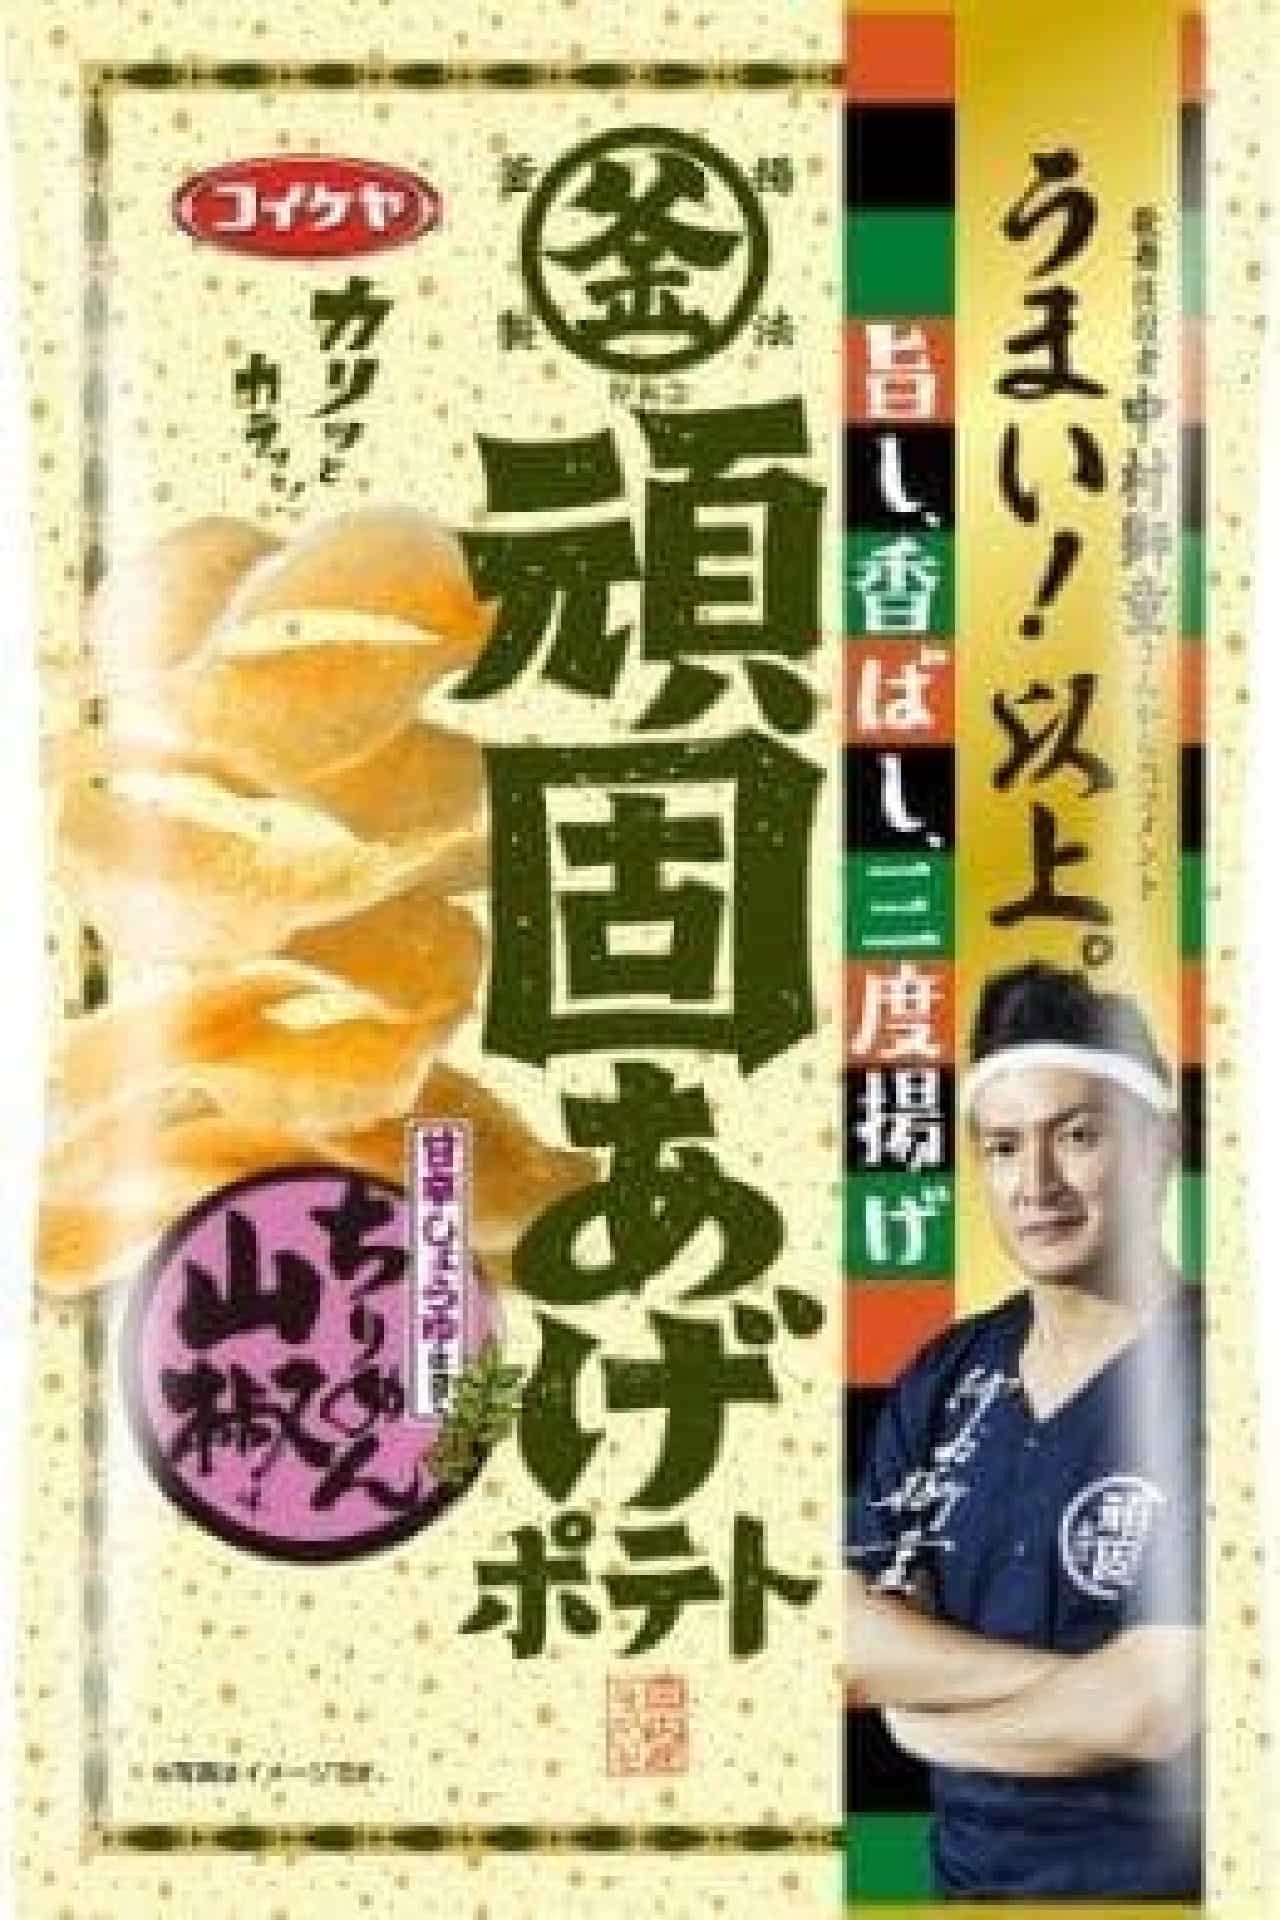 Koike-ya "Stubborn Potato Chirimen Sansho Flavor"